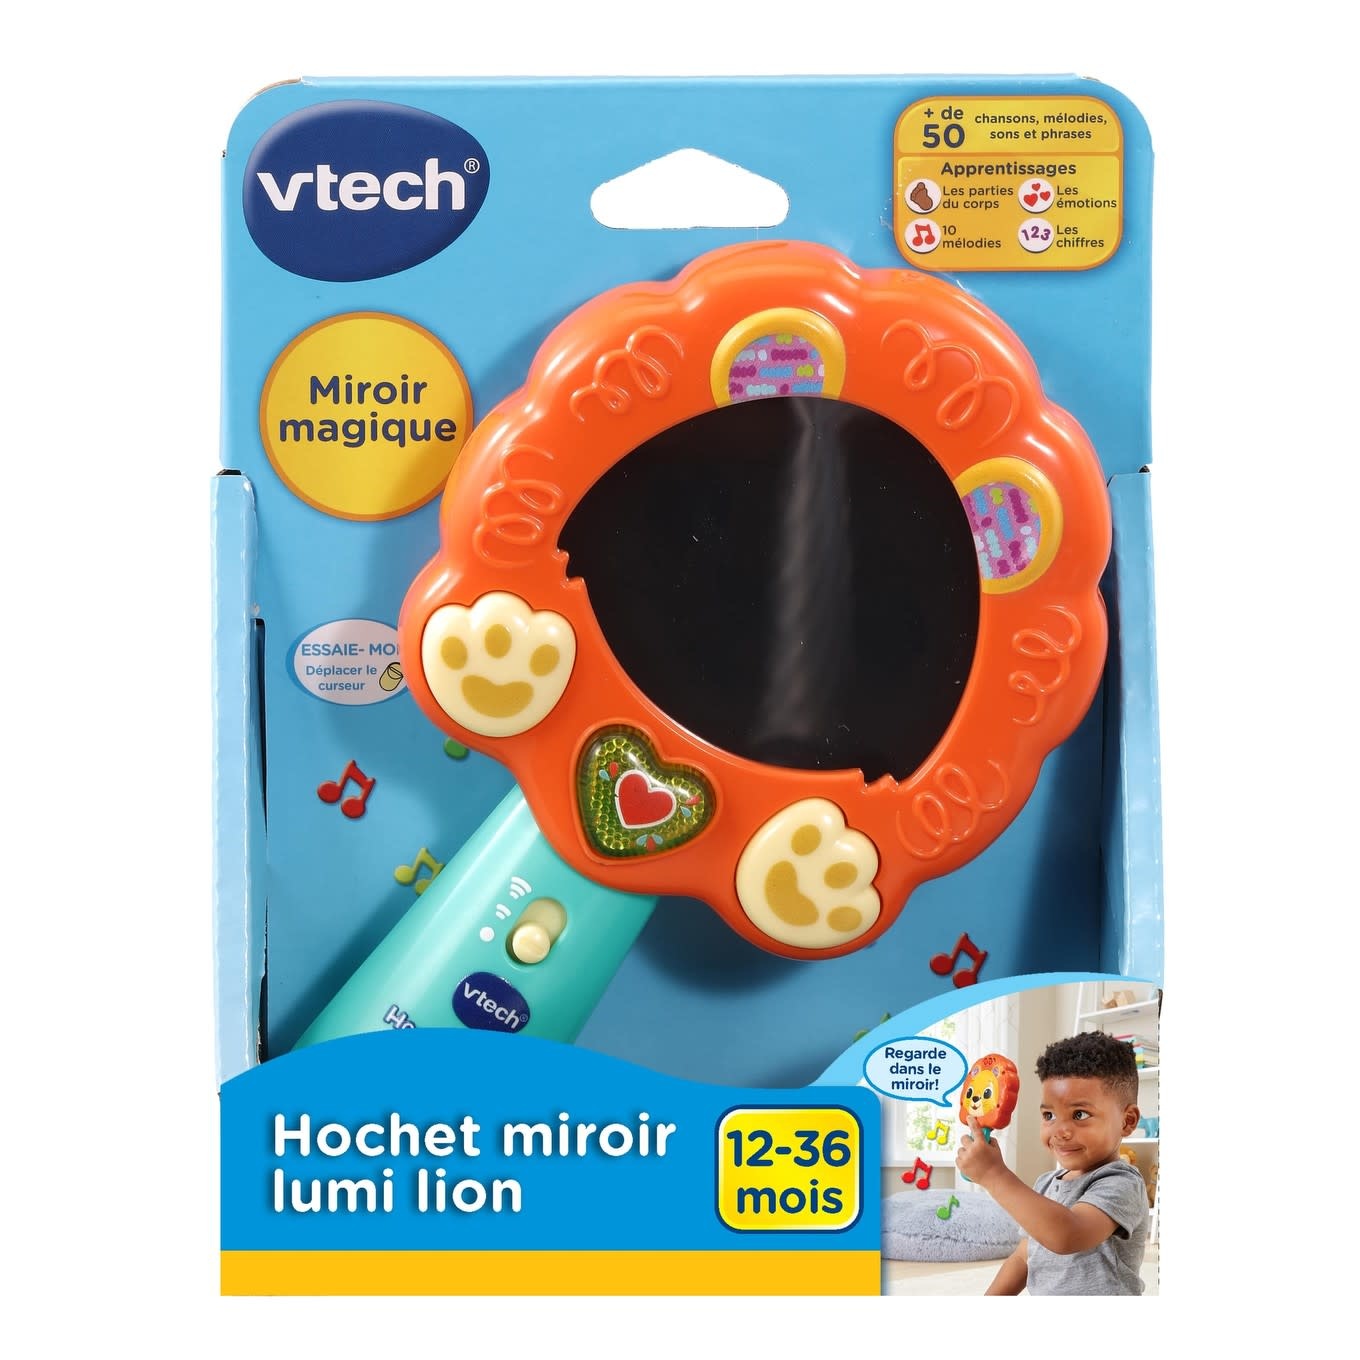 VTech Hochet miroir lumi lion